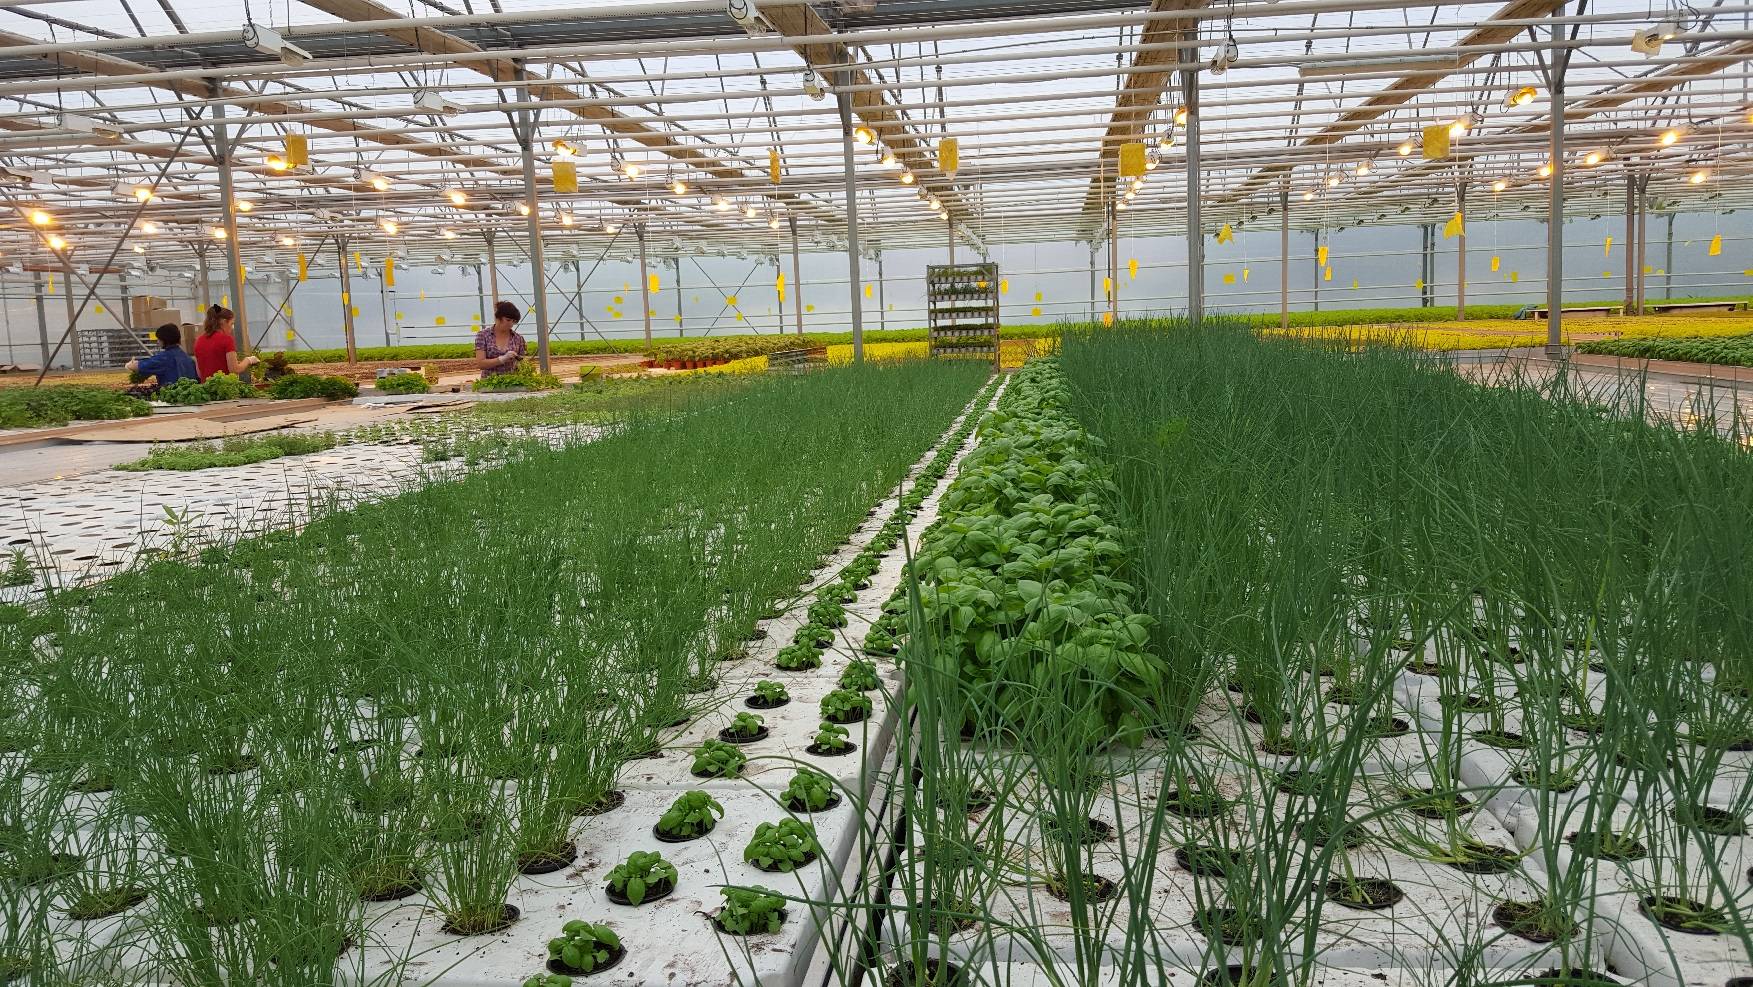 Выращивание зелени в теплице как бизнес: с чего начать, каковы плюсы и минусы